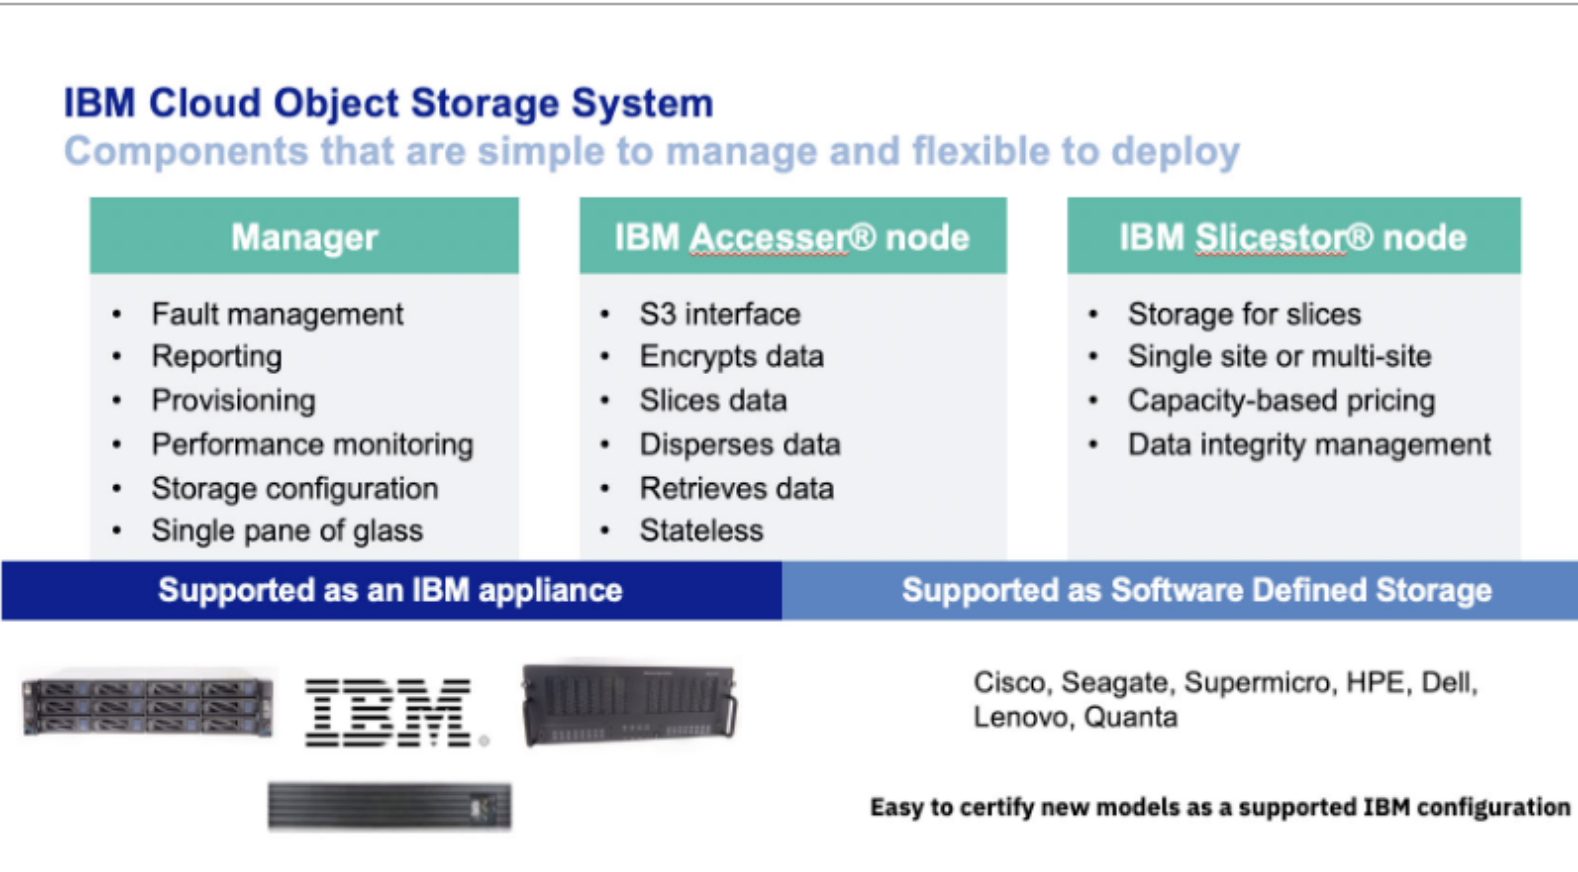 IBM Cloud Object Storage Sistemi Nasıl Çalışır?